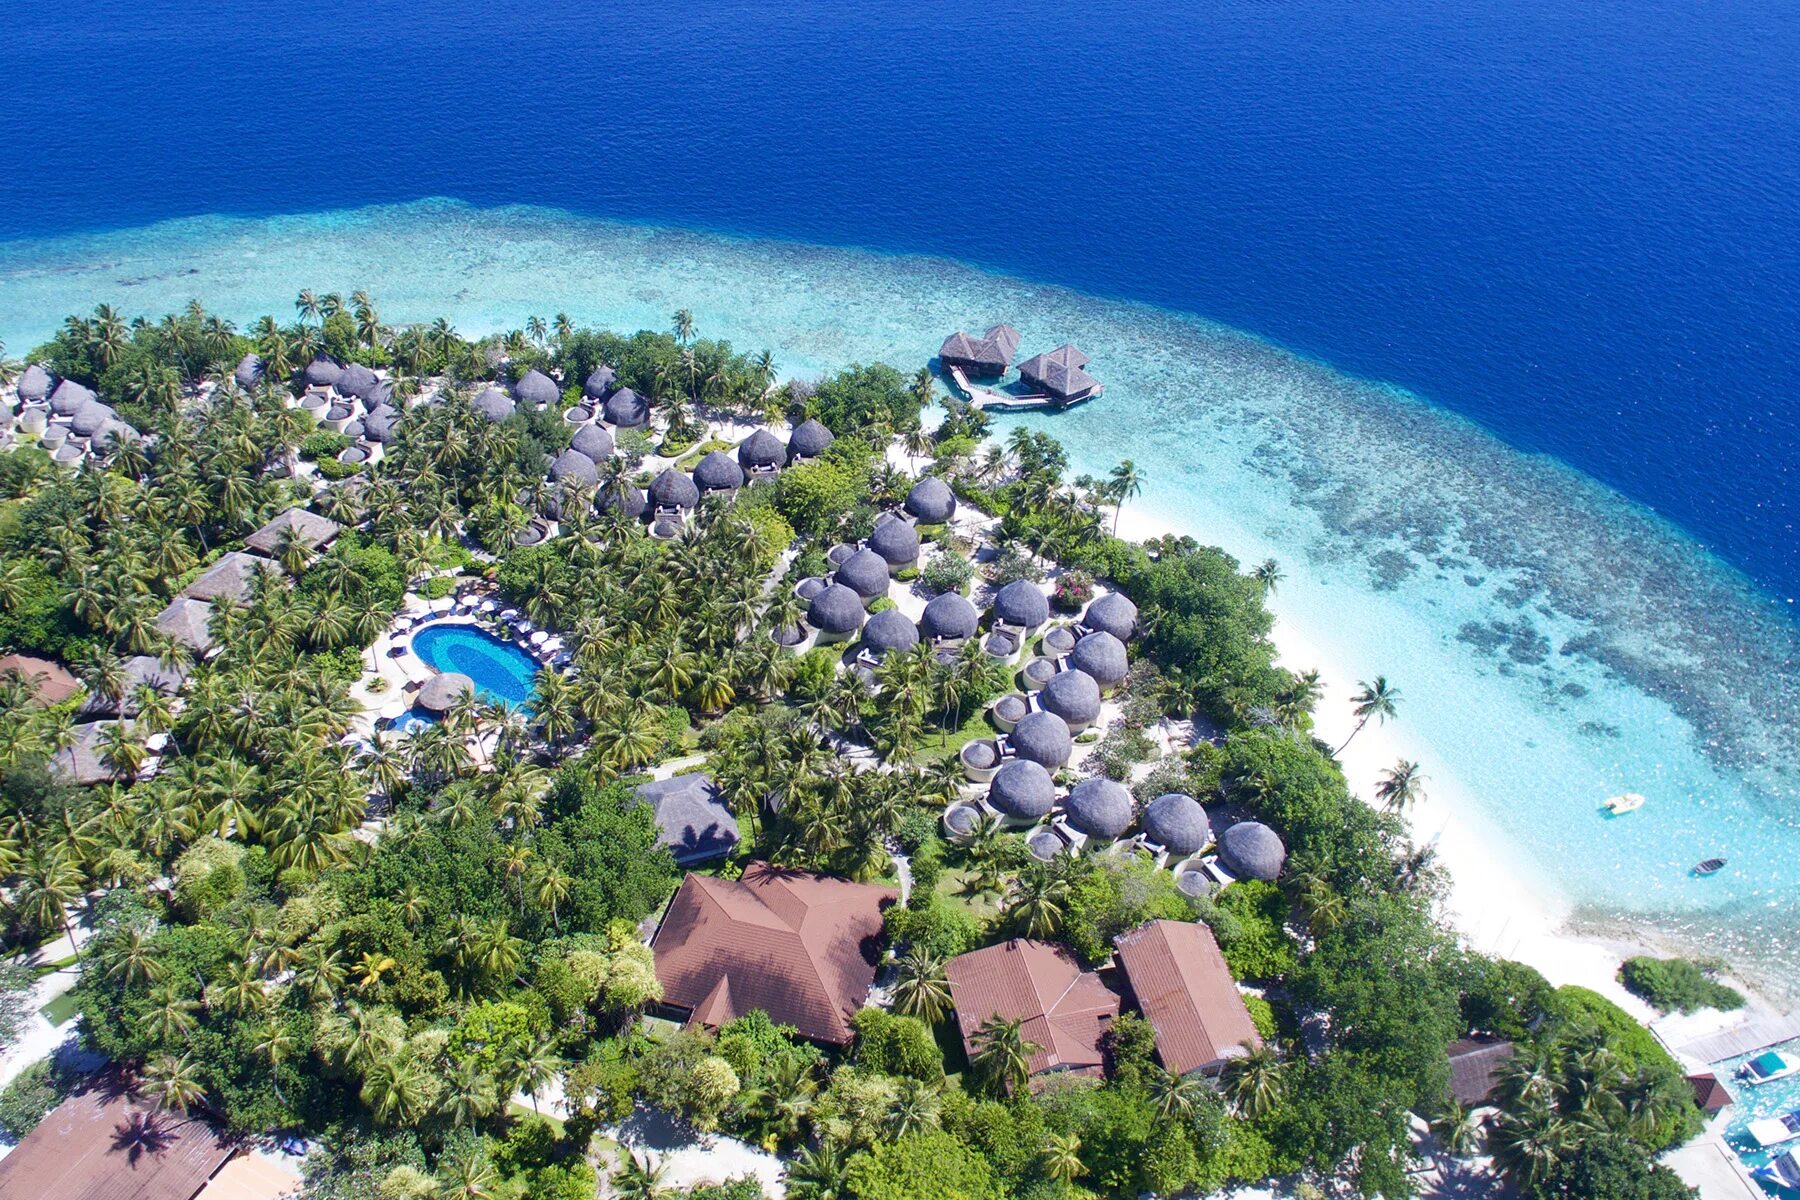 Отель Bandos Island Resort & Spa 4*. Остров Bandos Мальдивы. Bandos Maldives 4 Мальдивы. Bandos Maldives (ex. Bandos Island Resort) 4* Мальдивы,. Bandos island